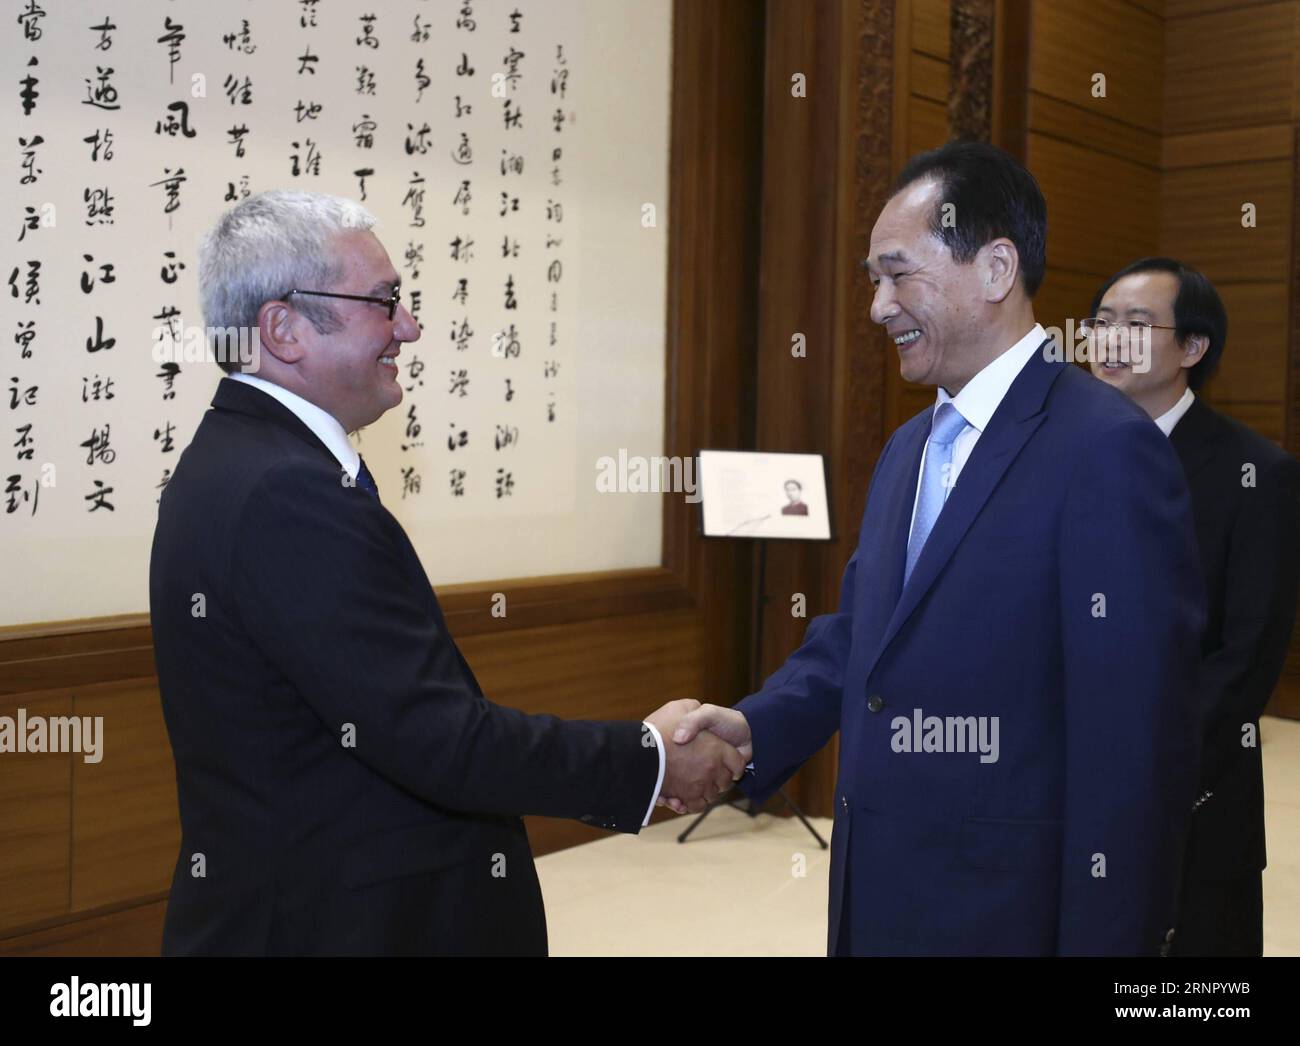 (170912) -- PÉKIN, 12 septembre 2017 -- le président de l'agence de presse Xinhua, Cai Mingzhao (à droite), rencontre Emmanuel Hoog, son homologue de l'agence France-presse (AFP) à Pékin, capitale de la Chine, le 12 septembre 2017. Cette année marque le 60e anniversaire de la signature d'accords d'échange de nouvelles entre Xinhua et AFP, a déclaré Cai, exprimant son espoir que les deux parties augmenteront les communications et la coopération dans le développement des nouveaux médias. CAI a informé son homologue de l'AFP des progrès de Xinhua dans l'amélioration de la photographie, des vidéos courtes, de l'information financière et des services technologiques. Hoog a dit que AFP et Xinhua avaient mainta Banque D'Images